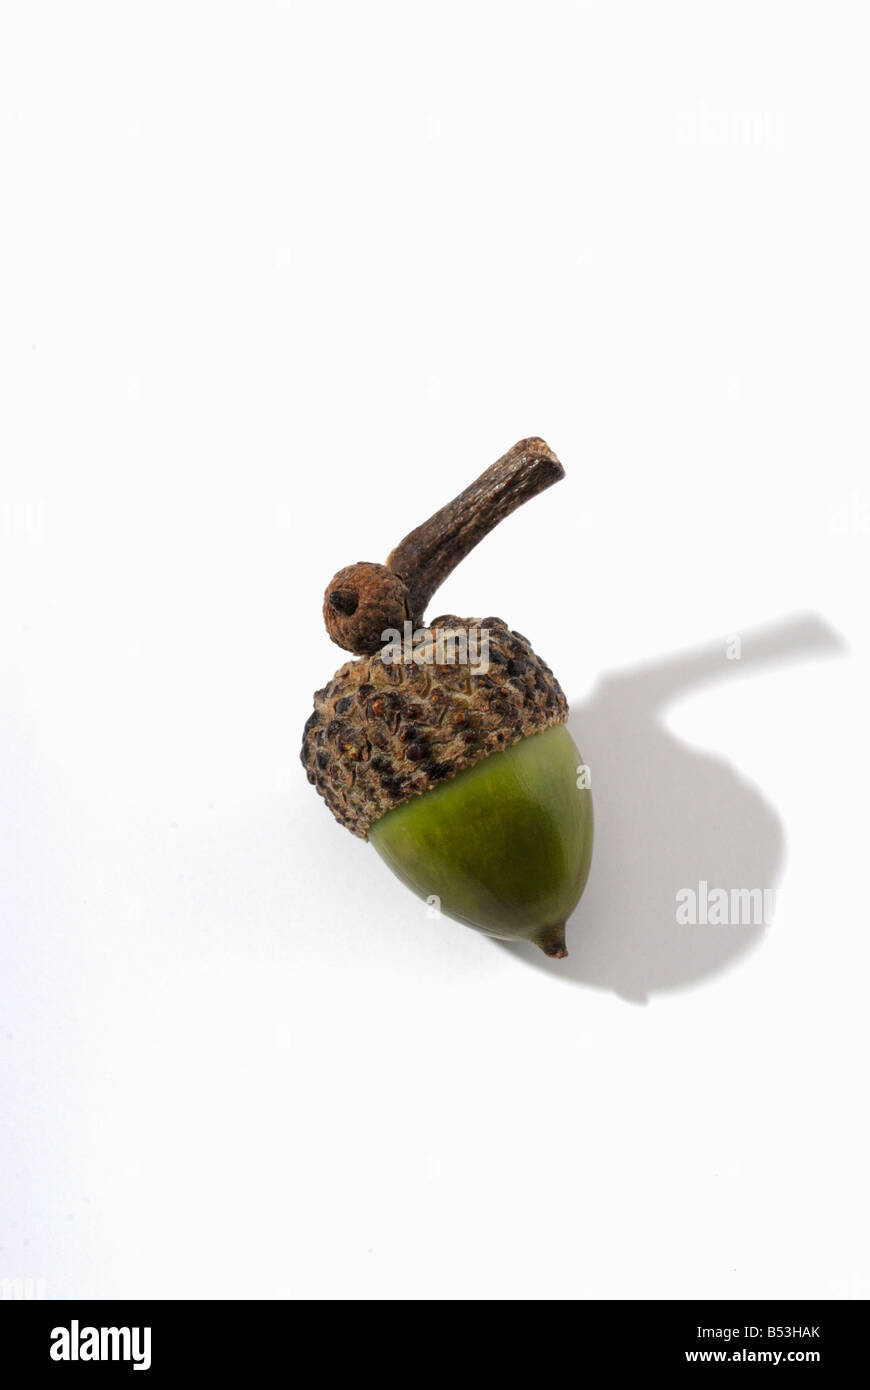 Acorn nut from an Oak tree Stock Photo